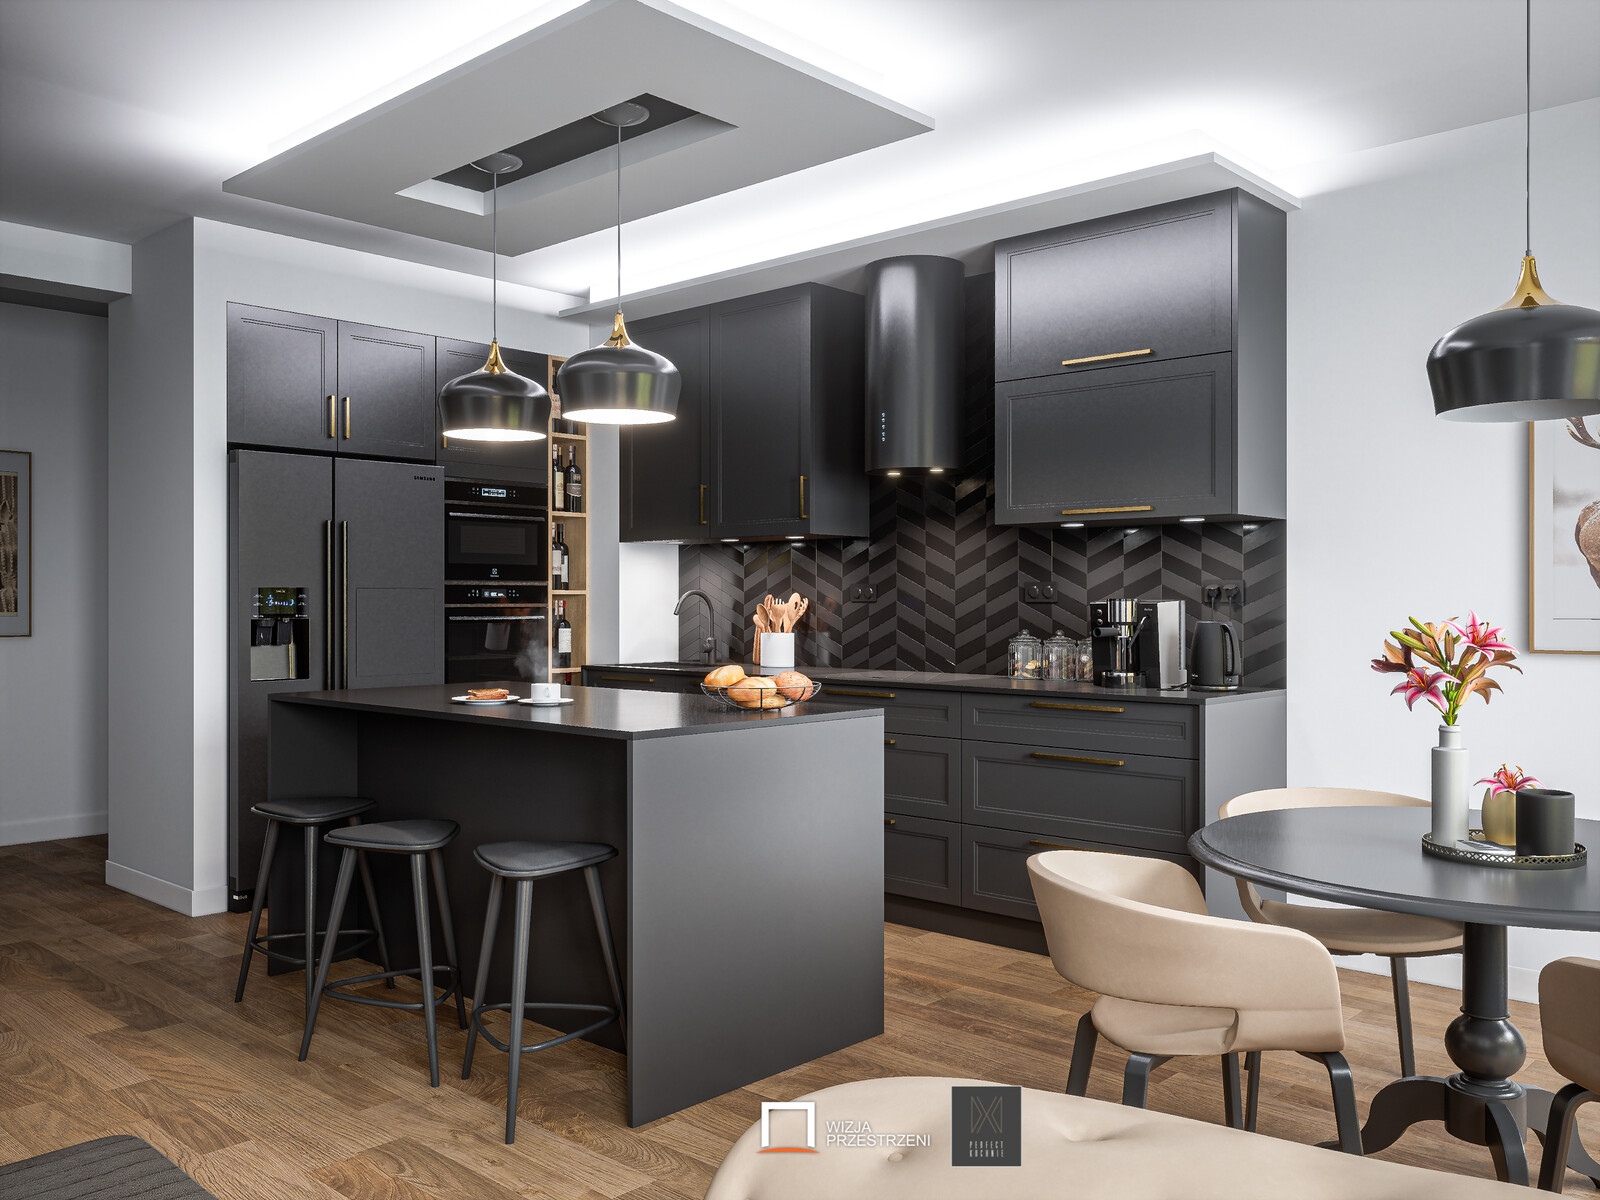 Black Kitchen Interior ArchViz - UE4 / Unreal Engine 4 + RTX